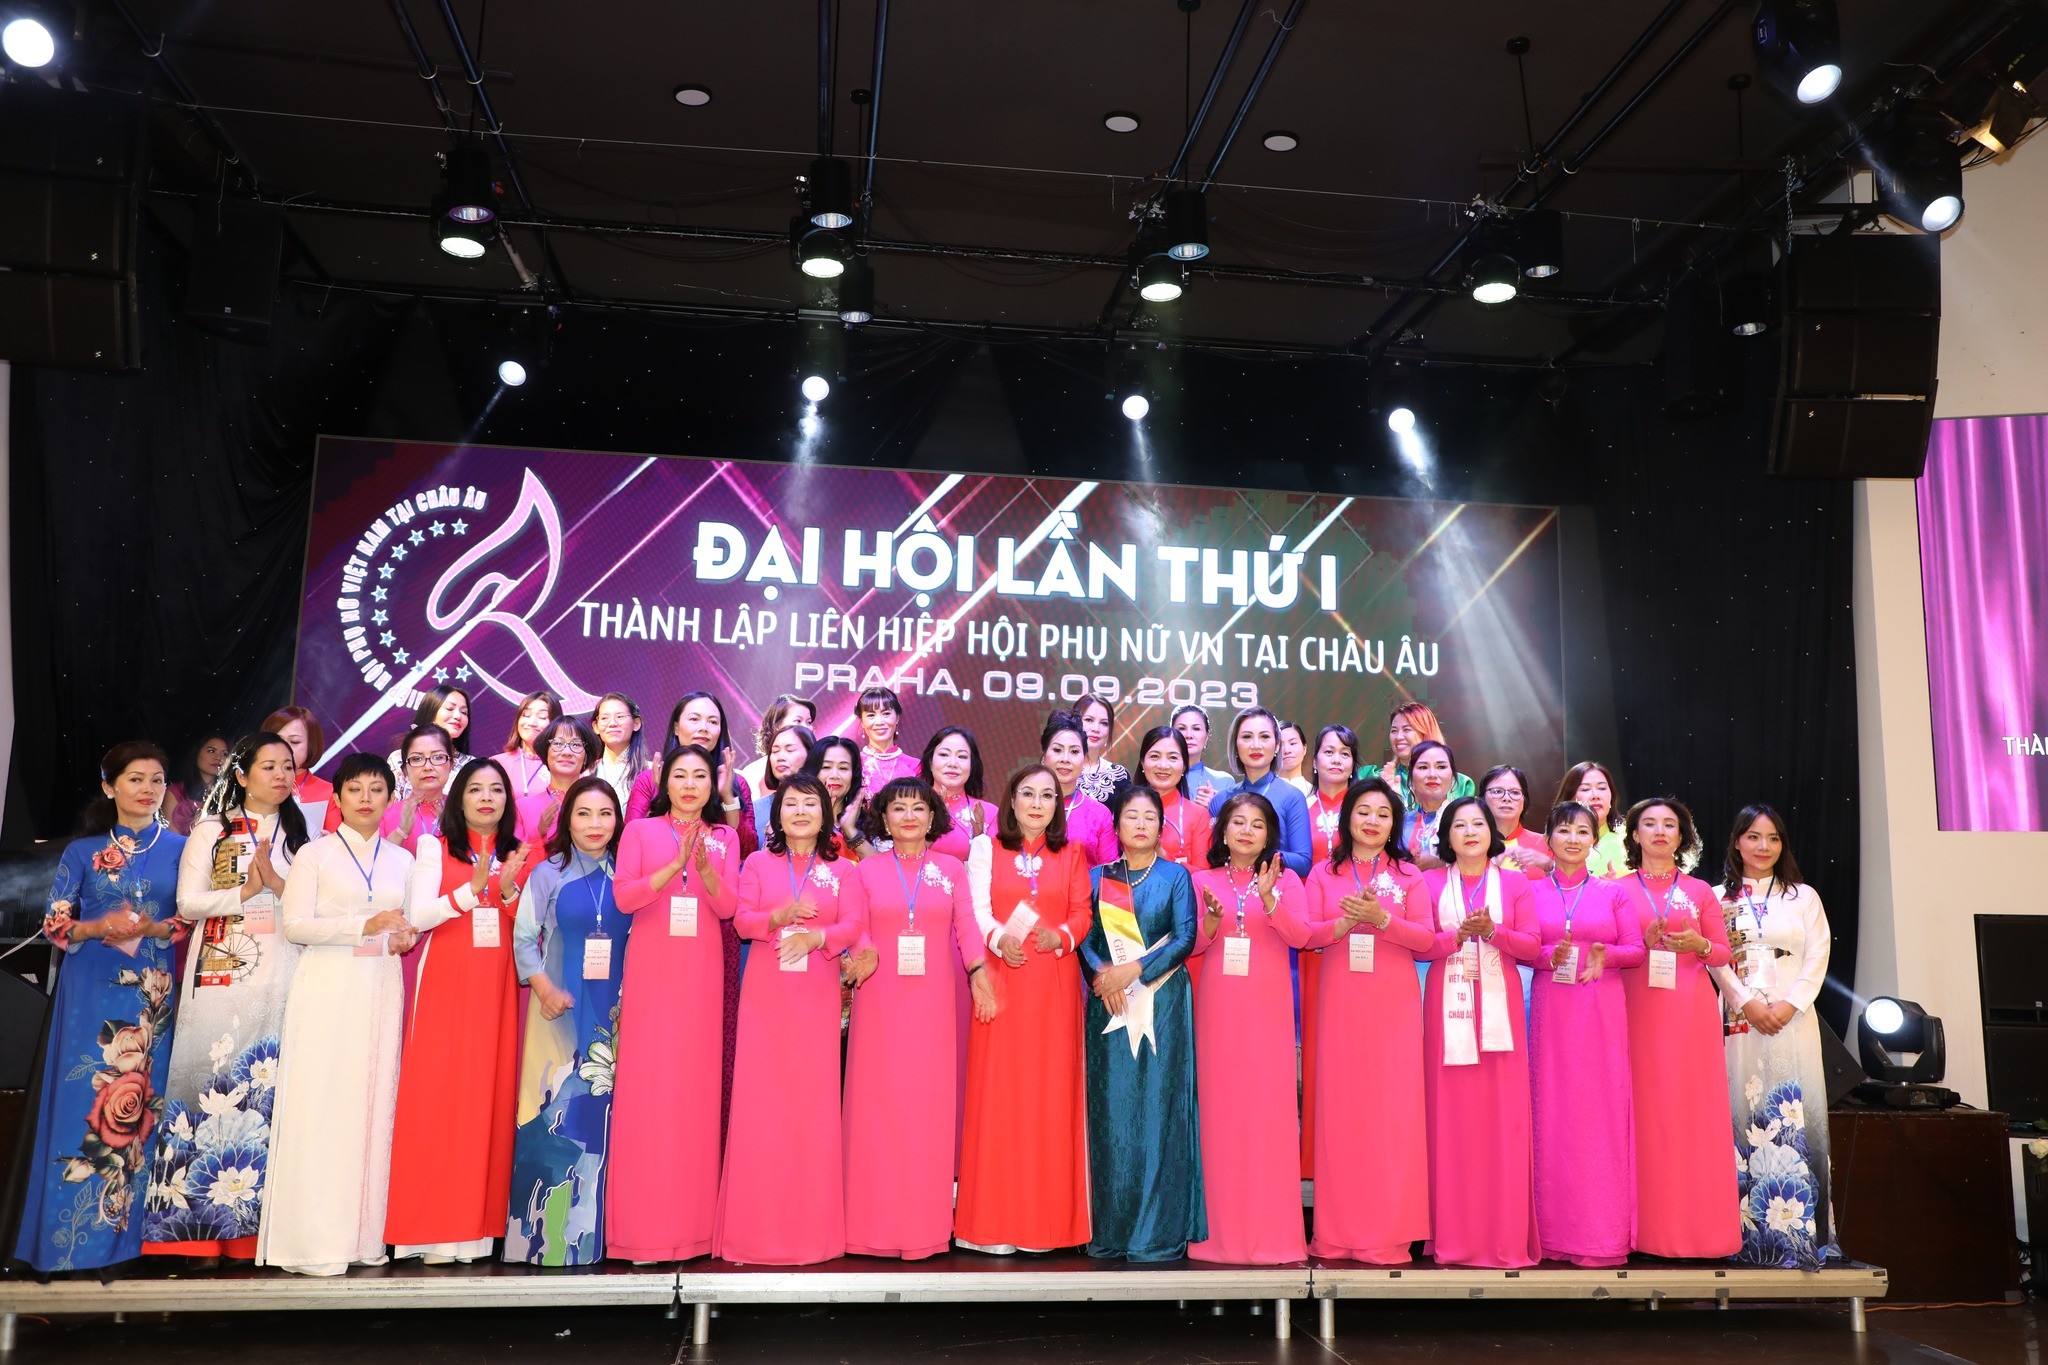 Ban chấp hành Liên hiệp hội Phụ nữ Việt Nam tại châu Âu nhiệm kỳ 2023-2028 ra mắt. (Ảnh: FB Pham Quynh Nga)